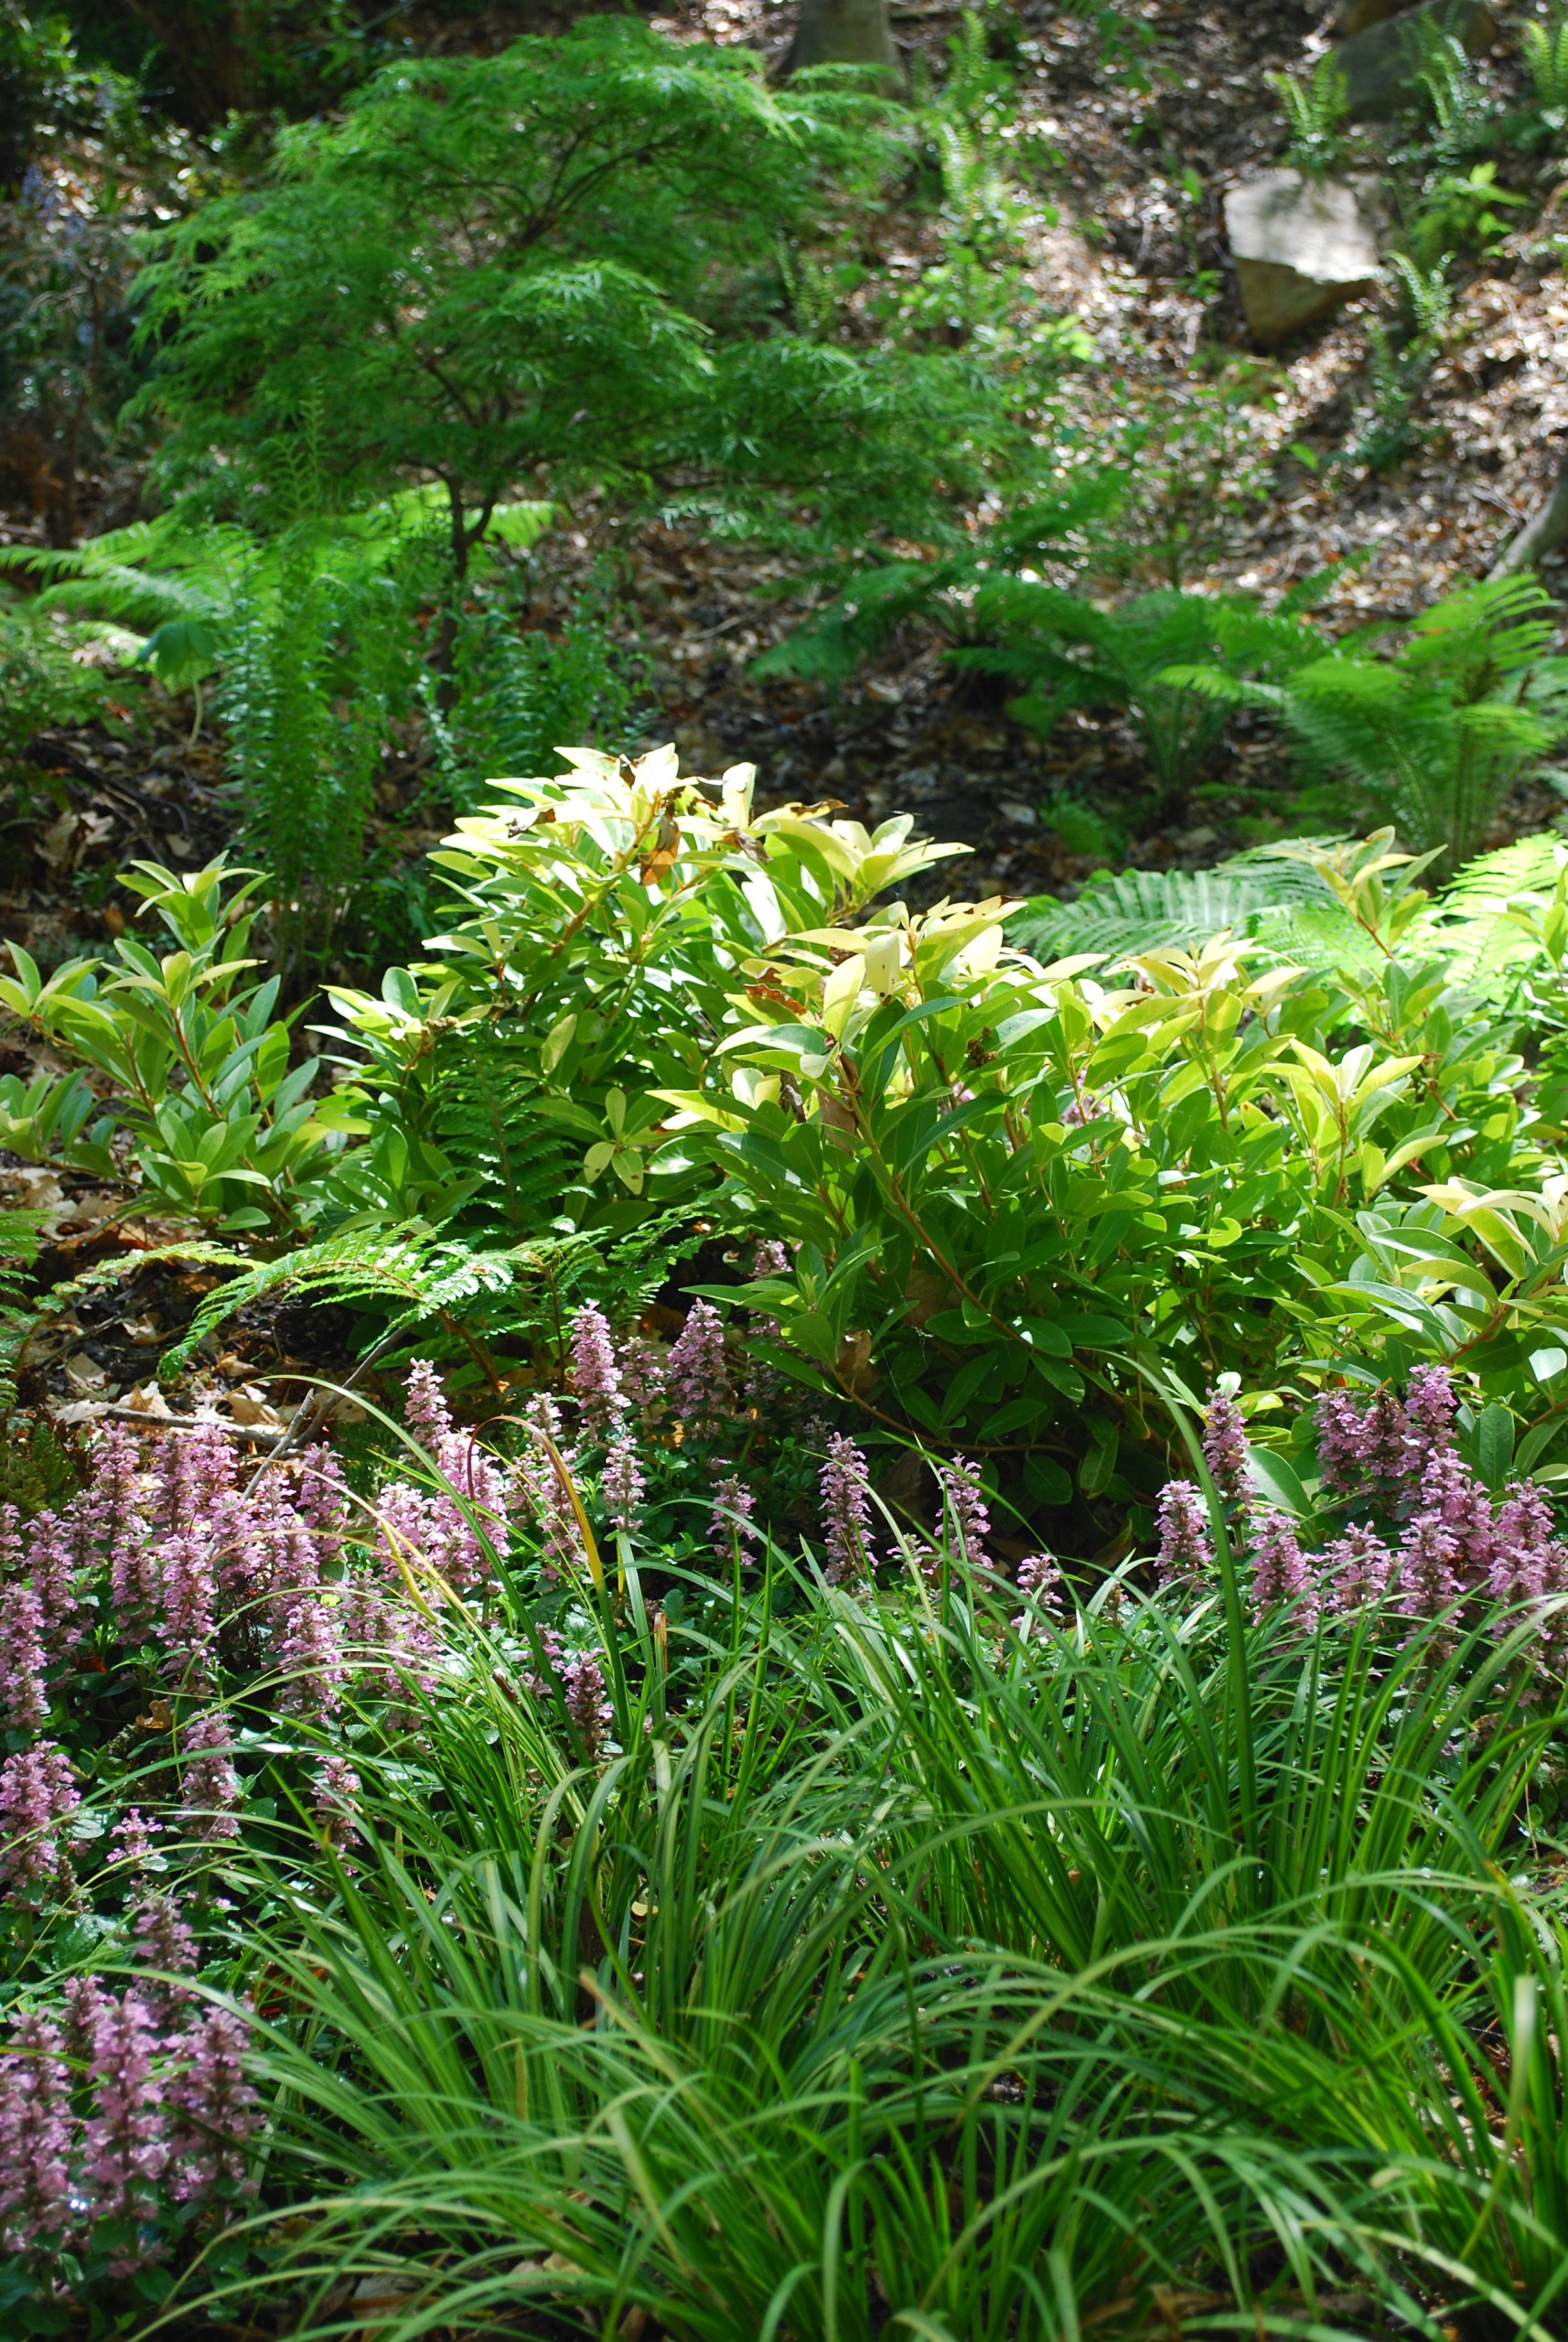 Japanese-inspired fern garden